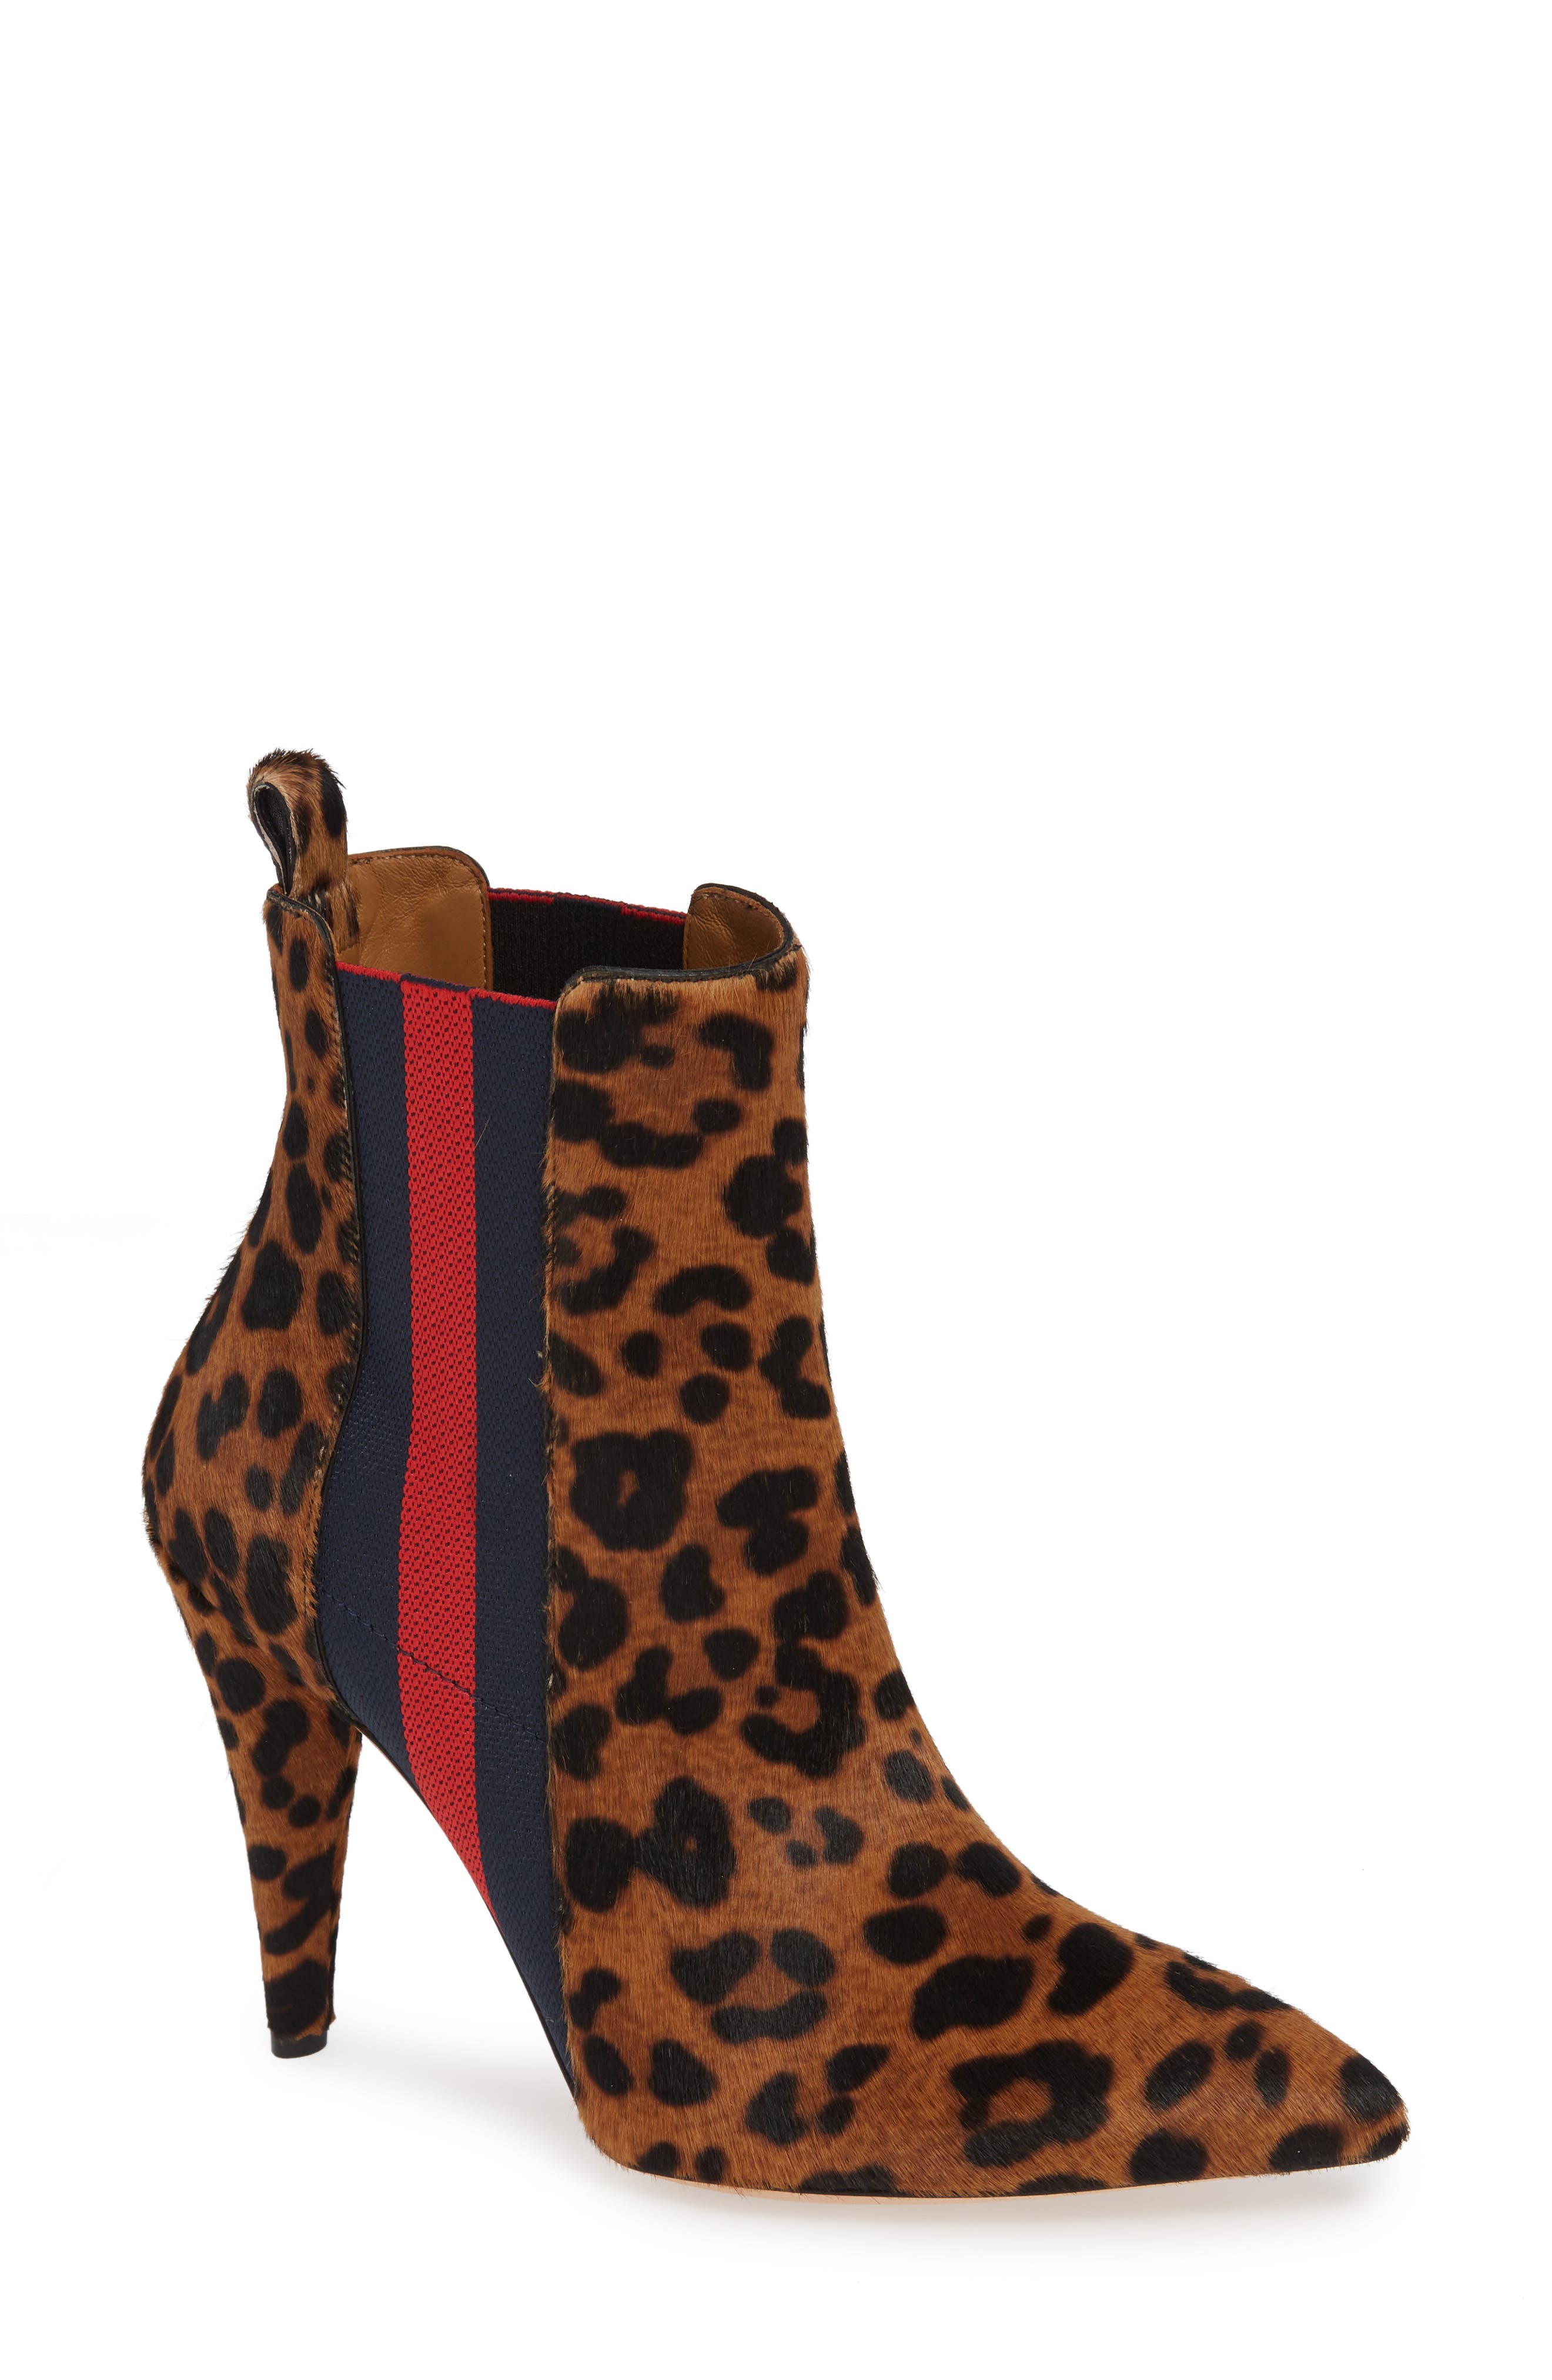 veronica beard leopard boots